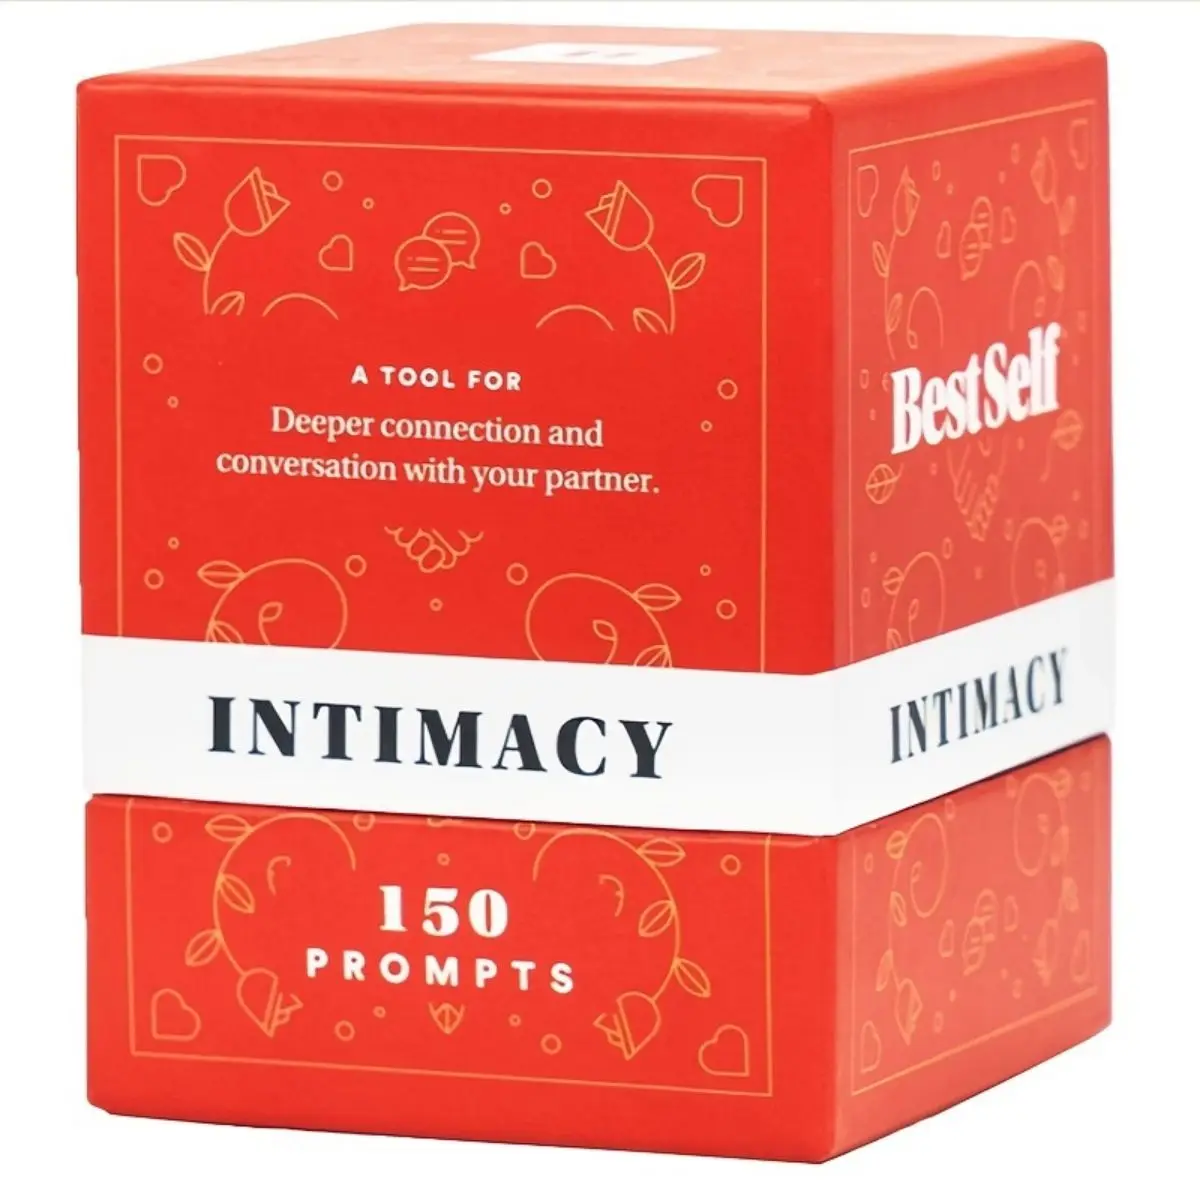 The Intimacy Deck: игра для романтической пары, которая поможет укрепить вашу связь и зажечь содержательные беседы.